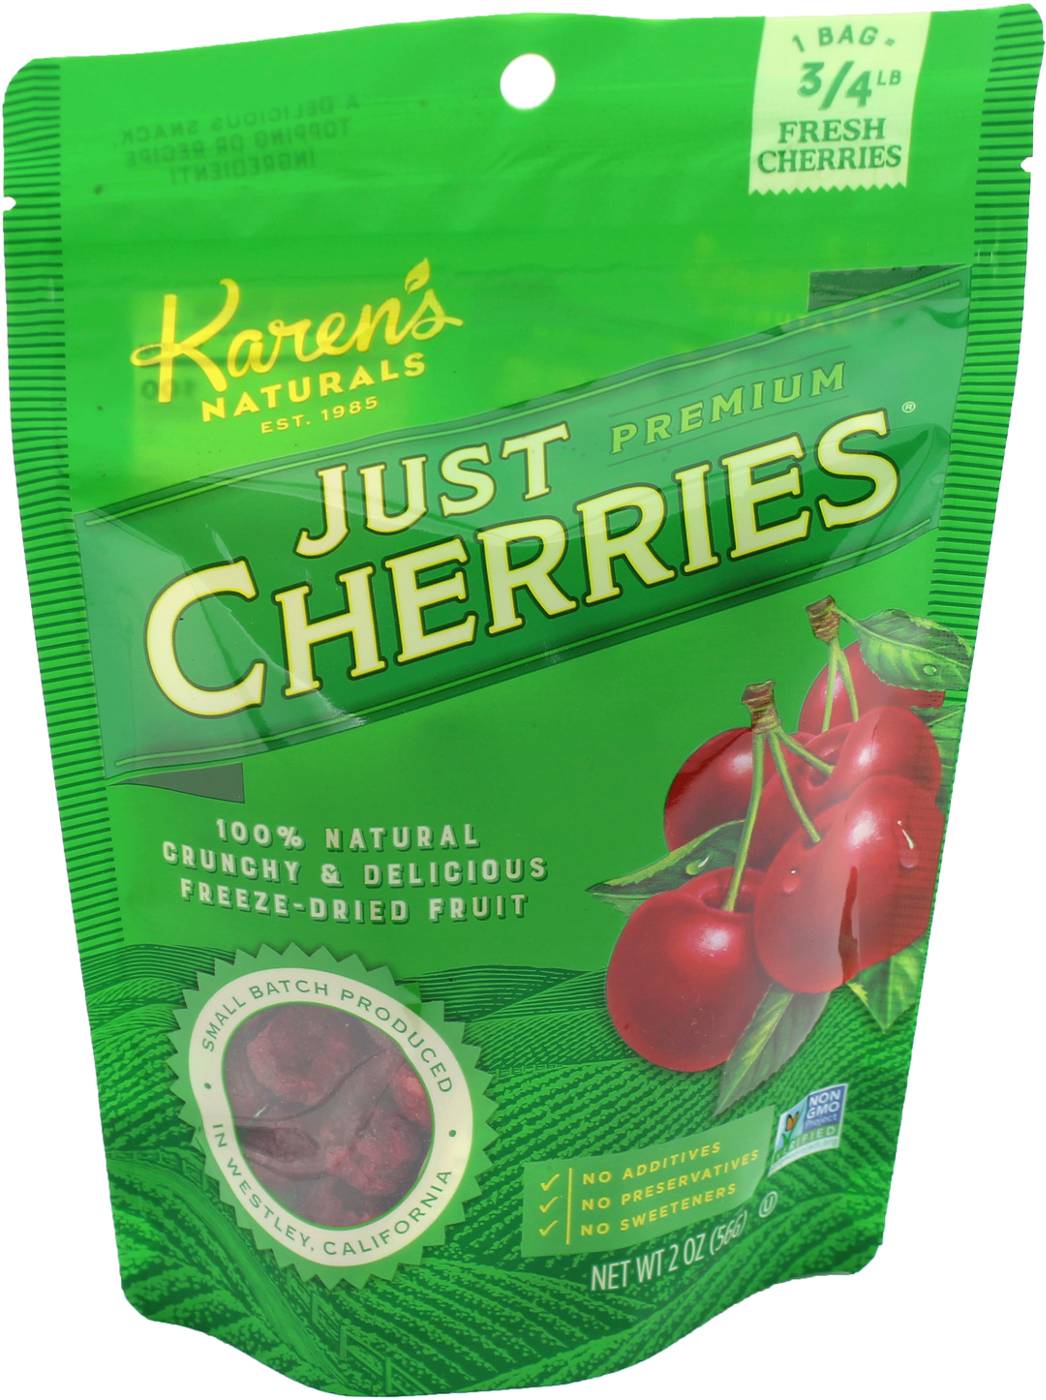 Karen's Naturals Just Cherries; image 1 of 2